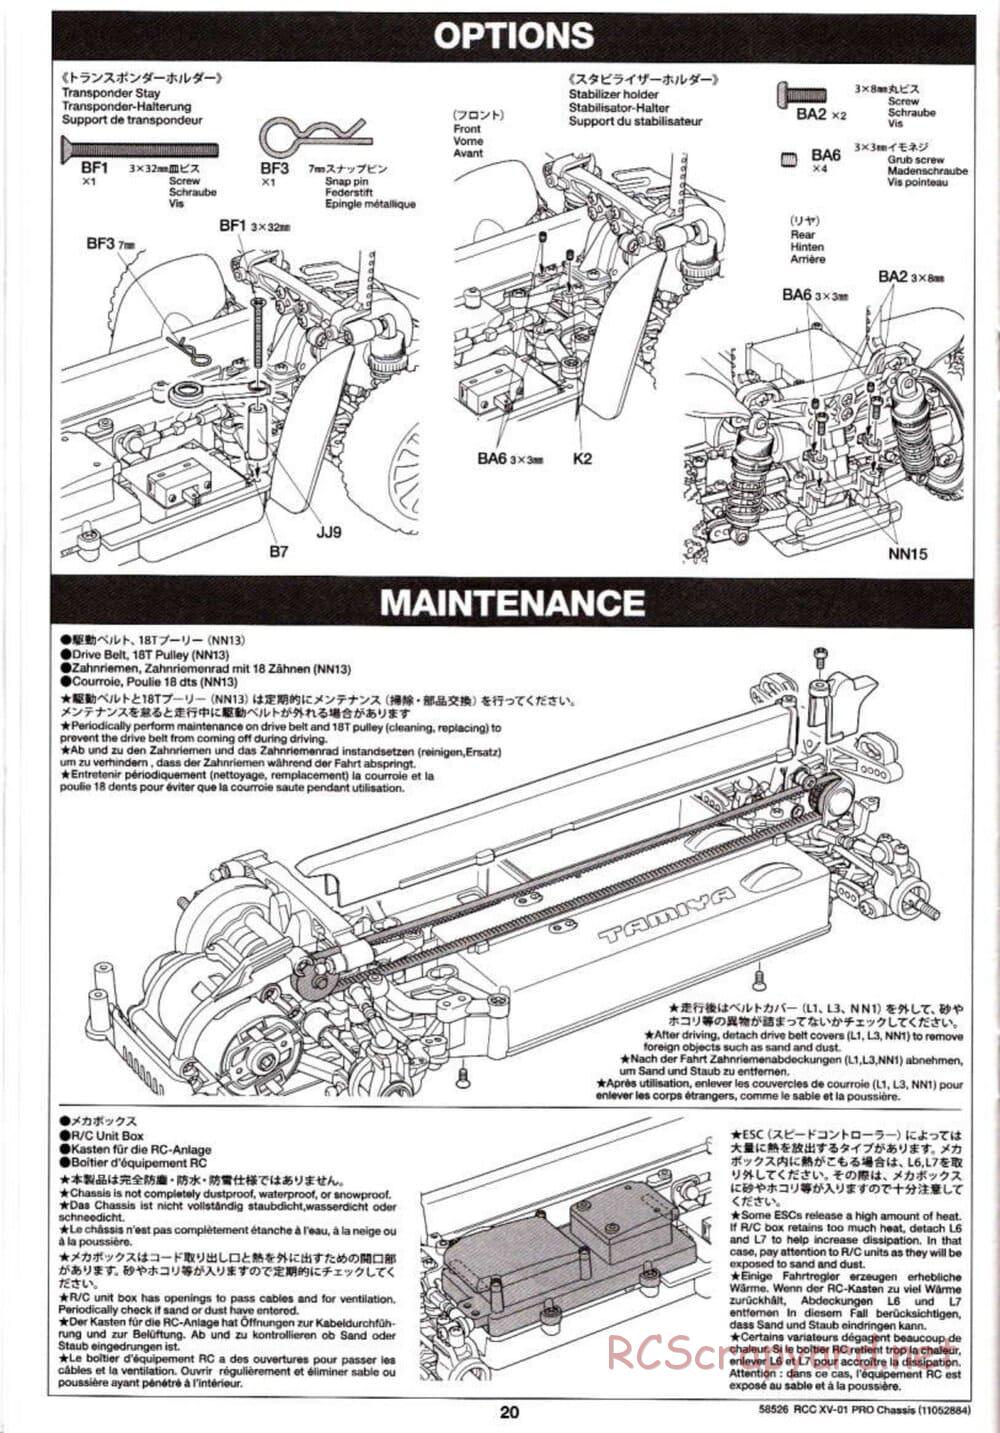 Tamiya - XV-01 PRO Chassis - Manual - Page 20